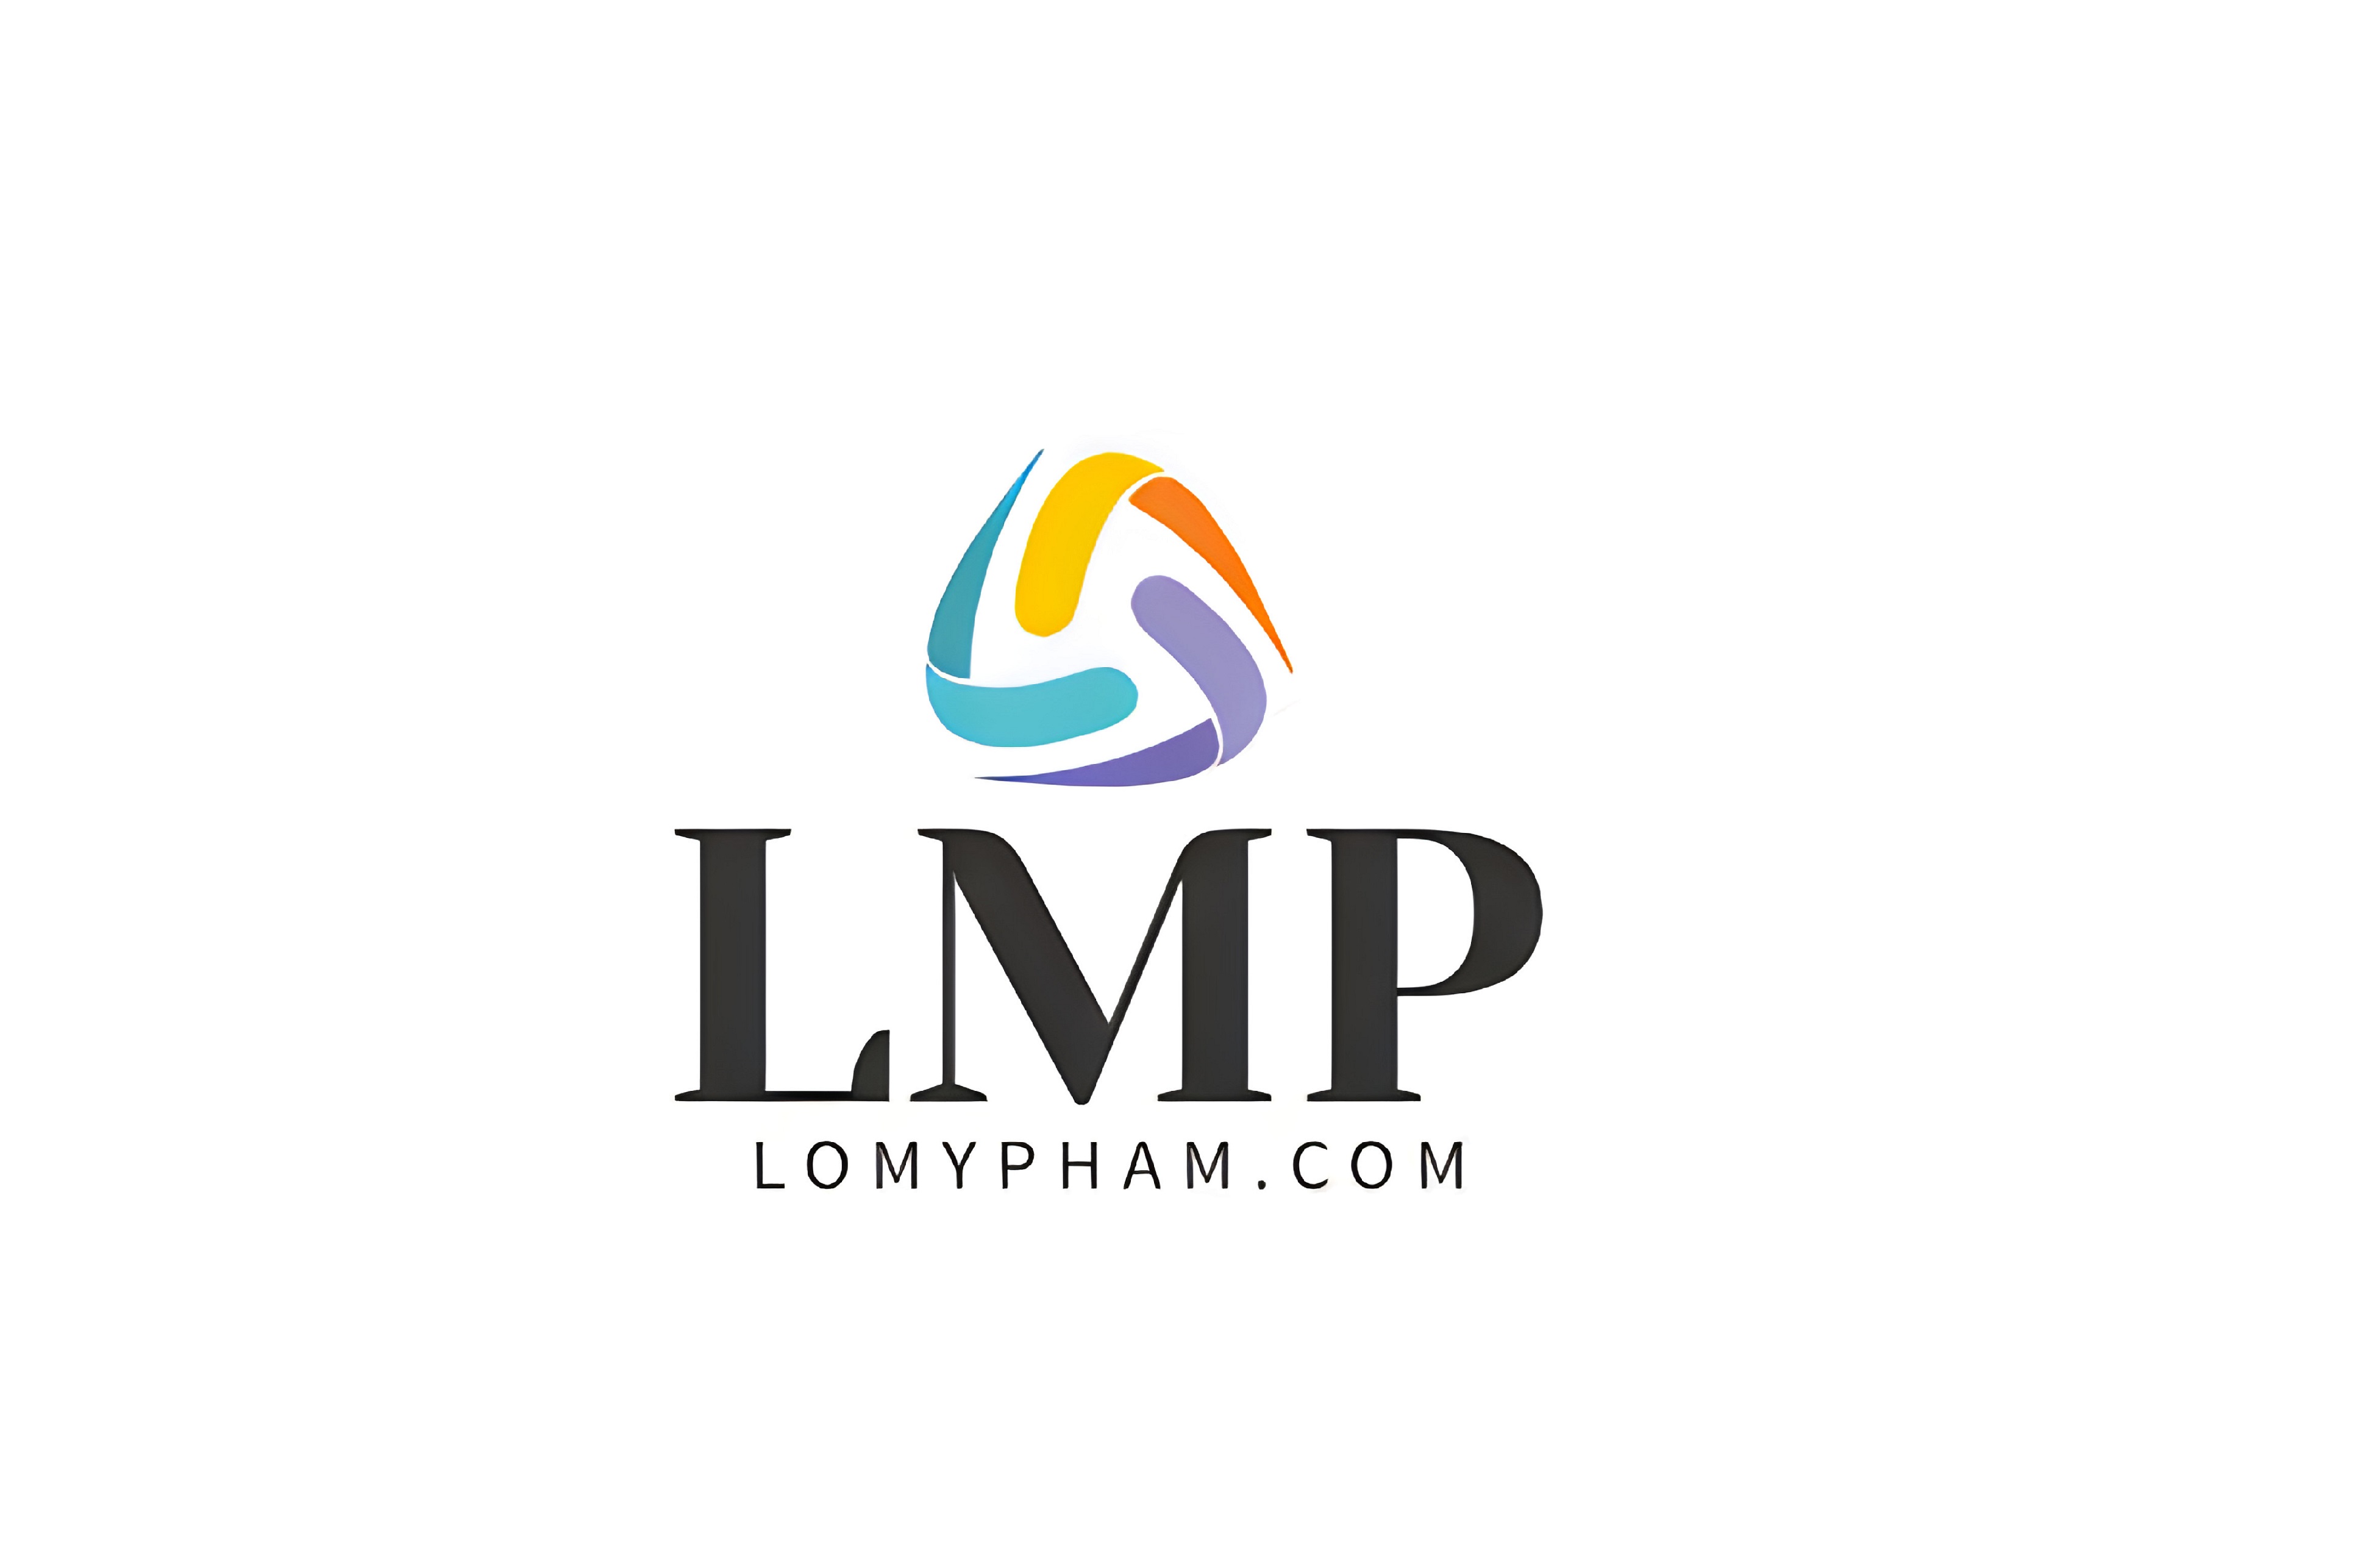 lomypham